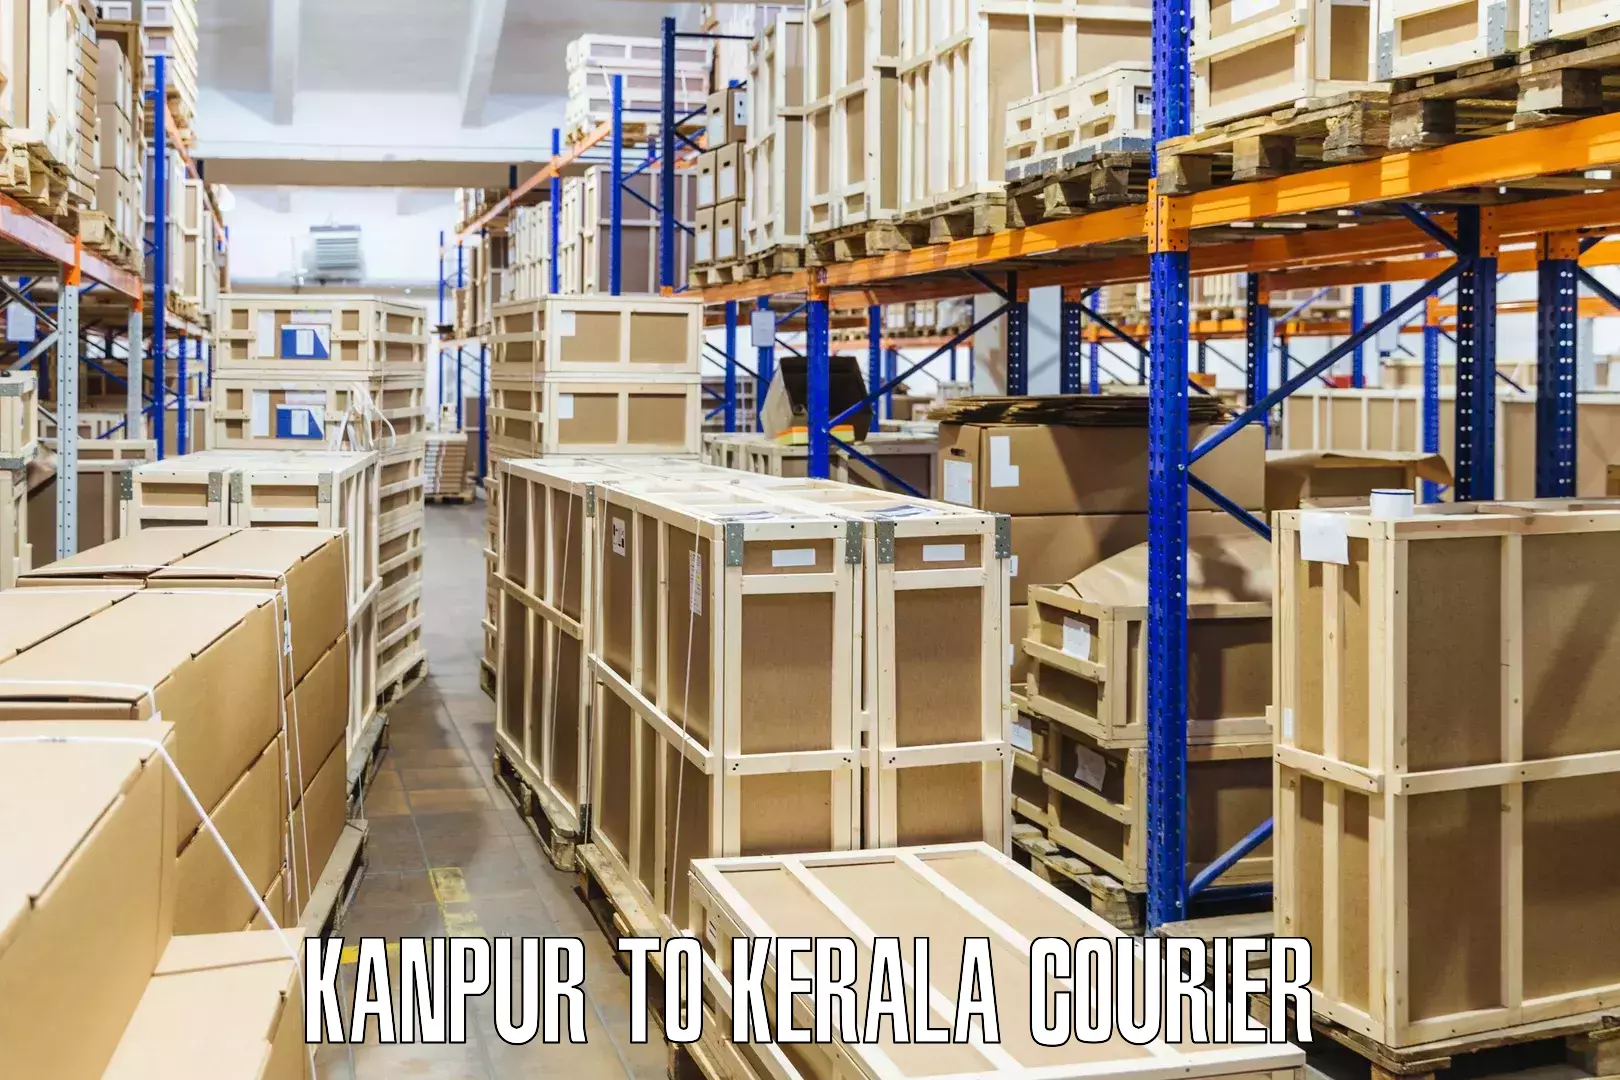 Door-to-door shipment Kanpur to Cochin Port Kochi